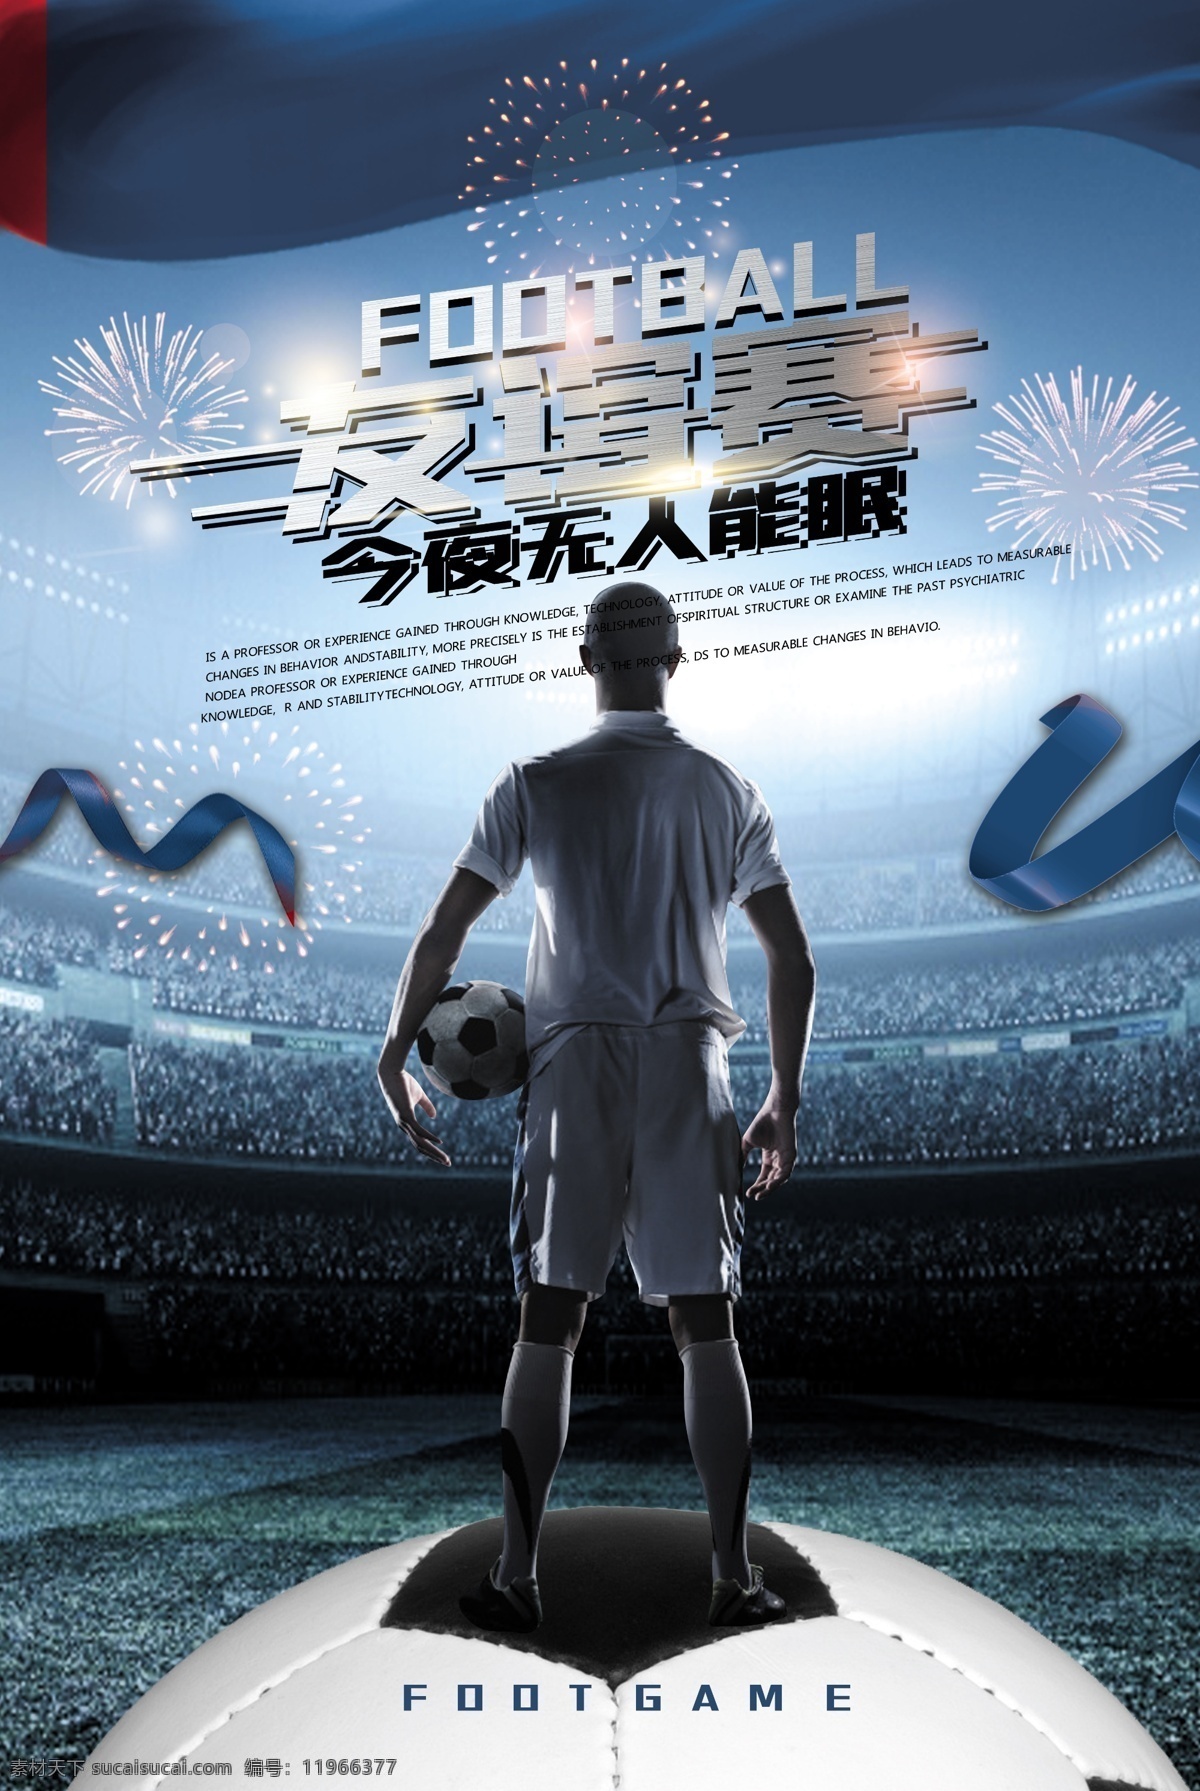 足球海报宣传 足球比赛 友谊赛 体育 竞技 海报 宣传 足球 培训 狂欢 明星赛 宣传海报 世界杯 欧 冠 联赛